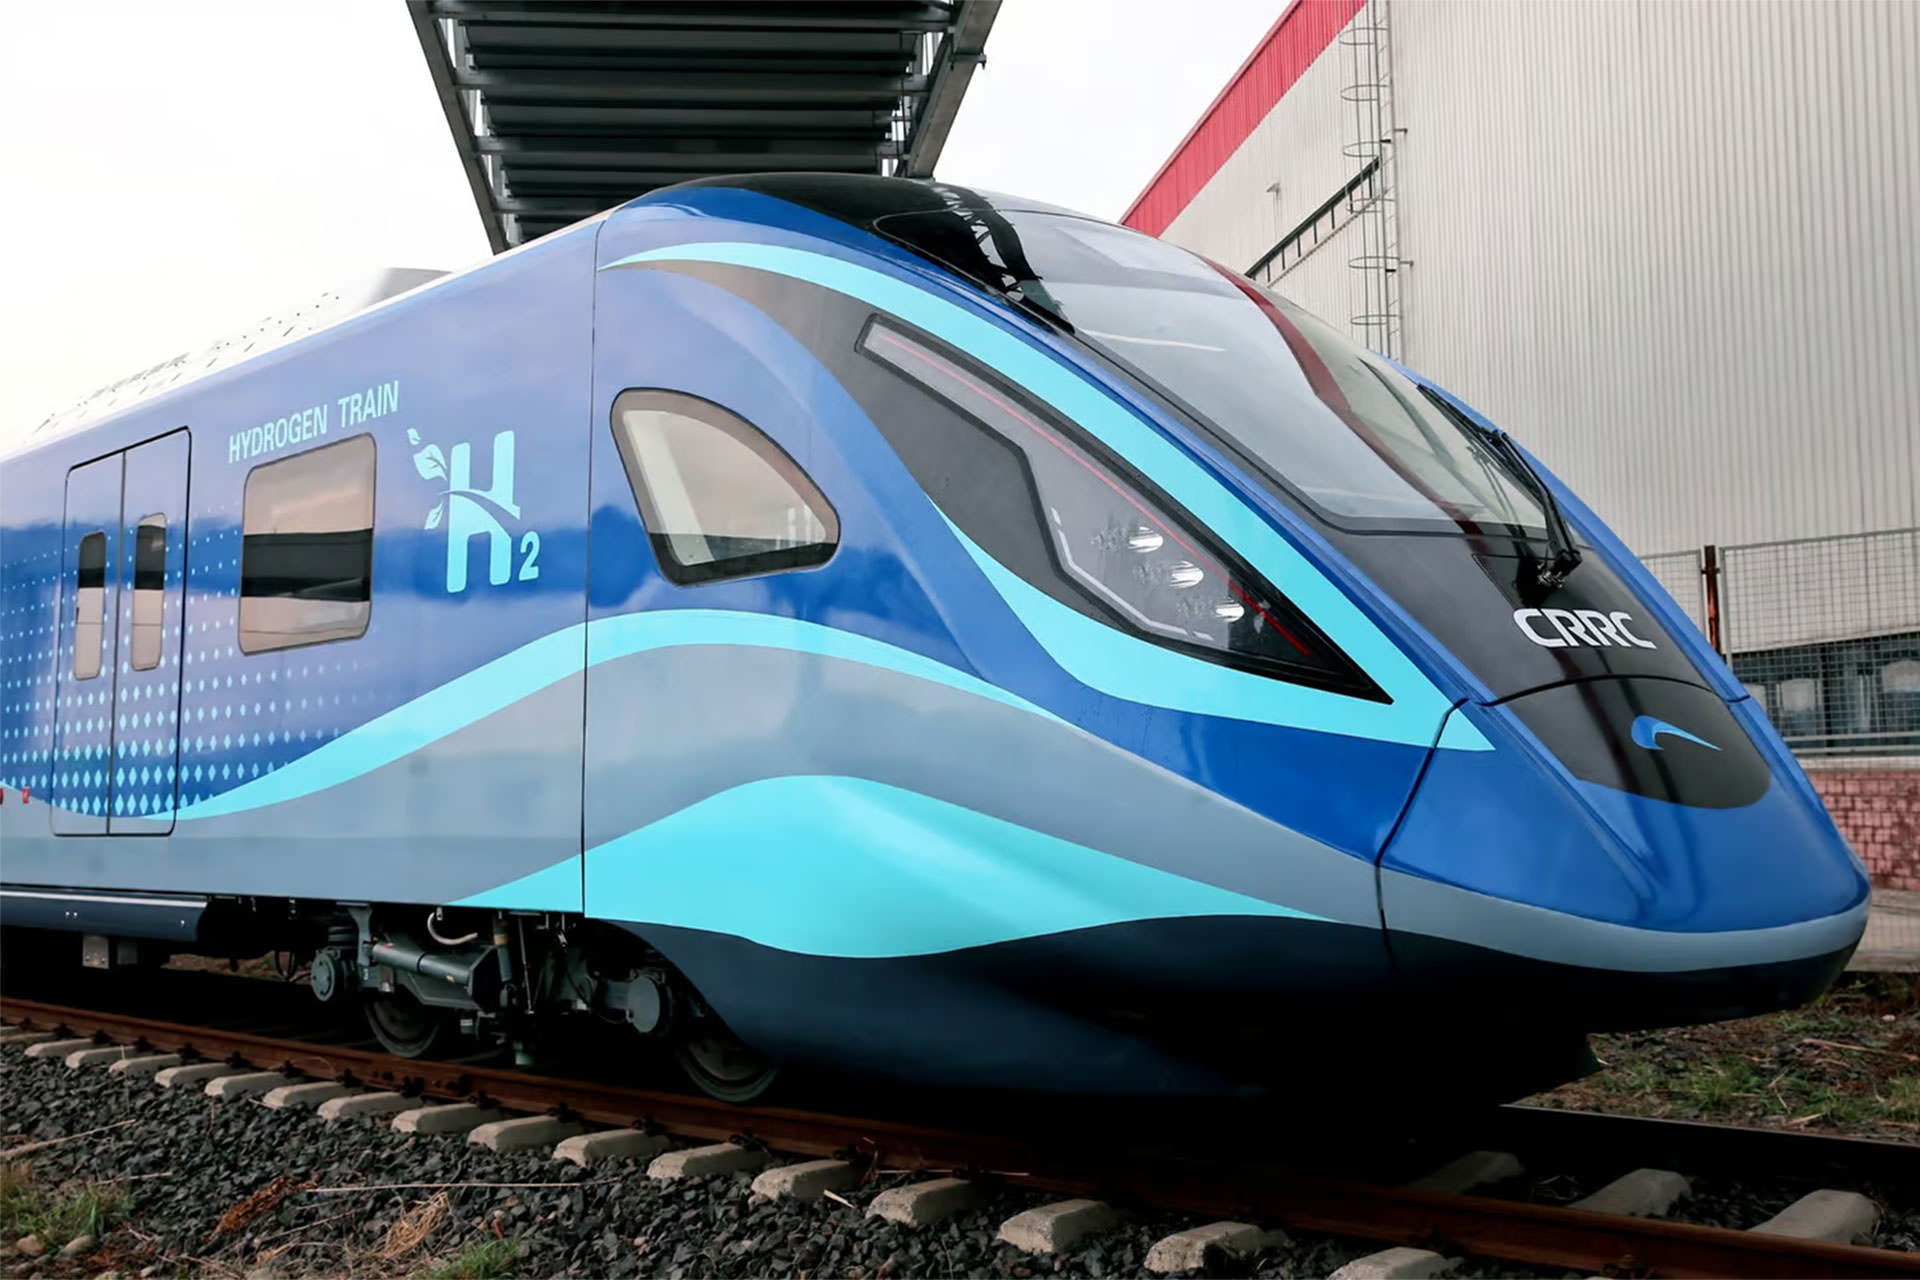 قطار هیدروژنی / hydrogen train آبی رنگ چین